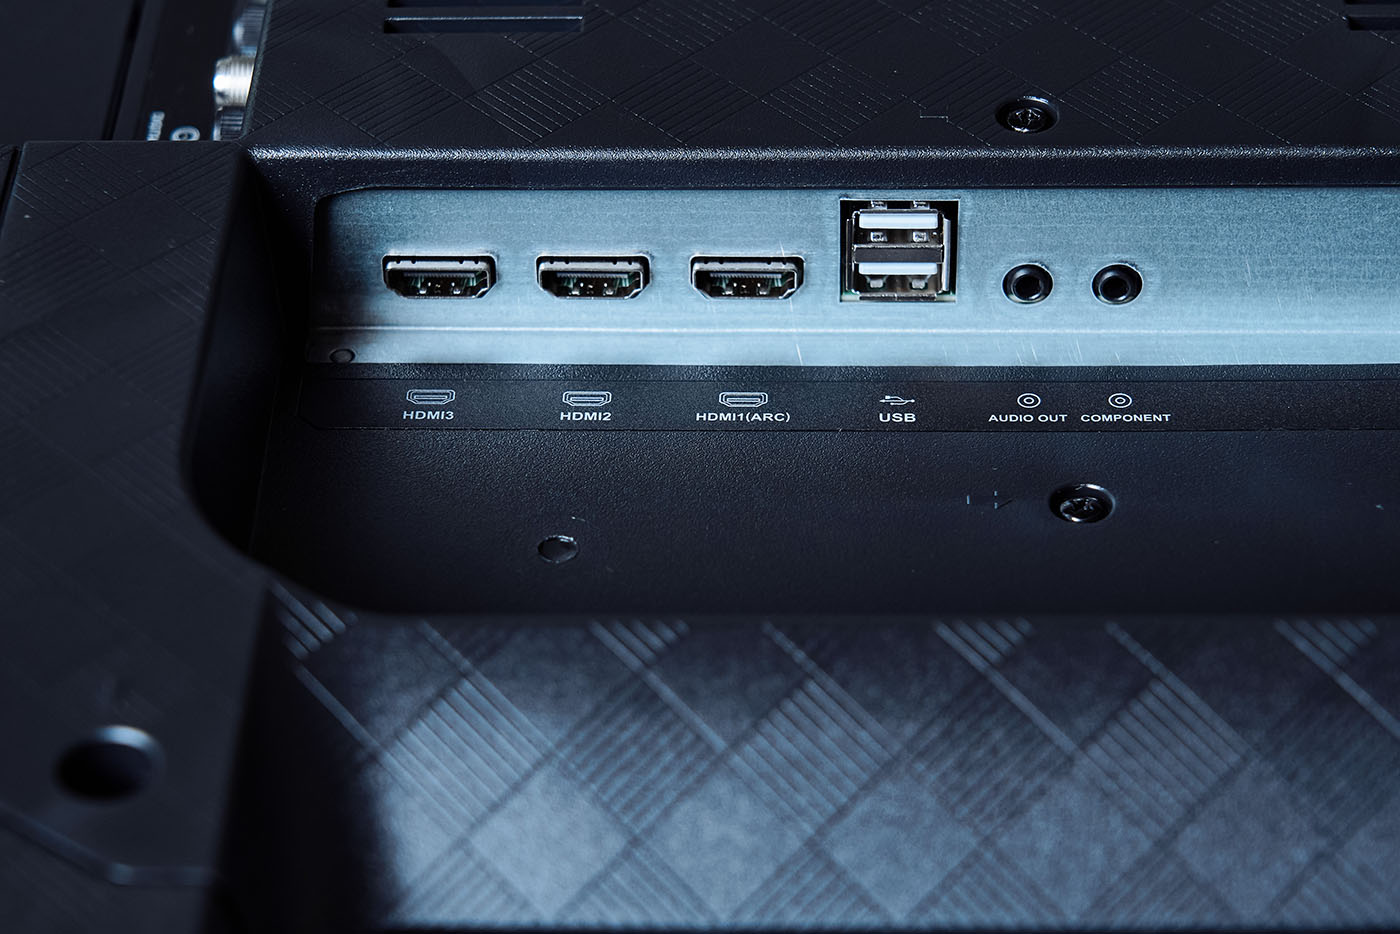 T65 提供豐富的傳輸介面，分別位在機背的側面以及下方，其�側邊的端�群包含三組 HDMI 輸入，兩組 USB 輸入以及一組音訊輸出，一組色差視訊輸入。